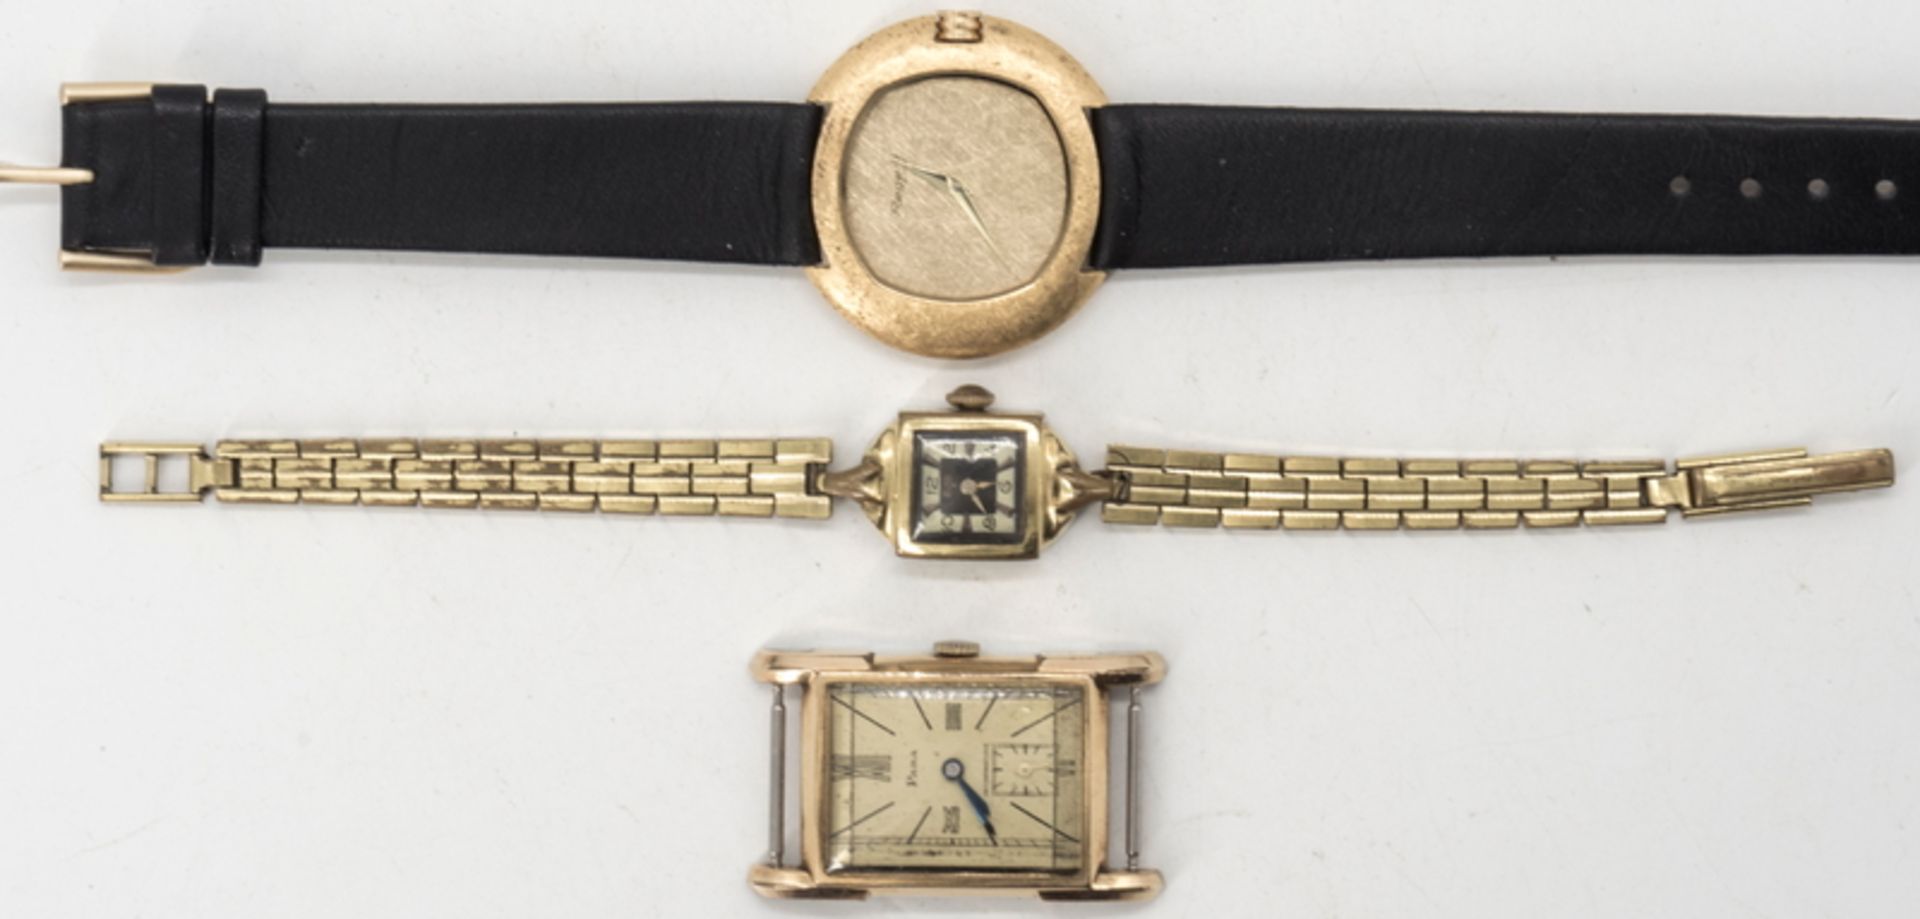 Drei Damen - Armbanduhren, Marken: Para, Regent (ungetragen, noch mit Preisetikett) und Alma, alle